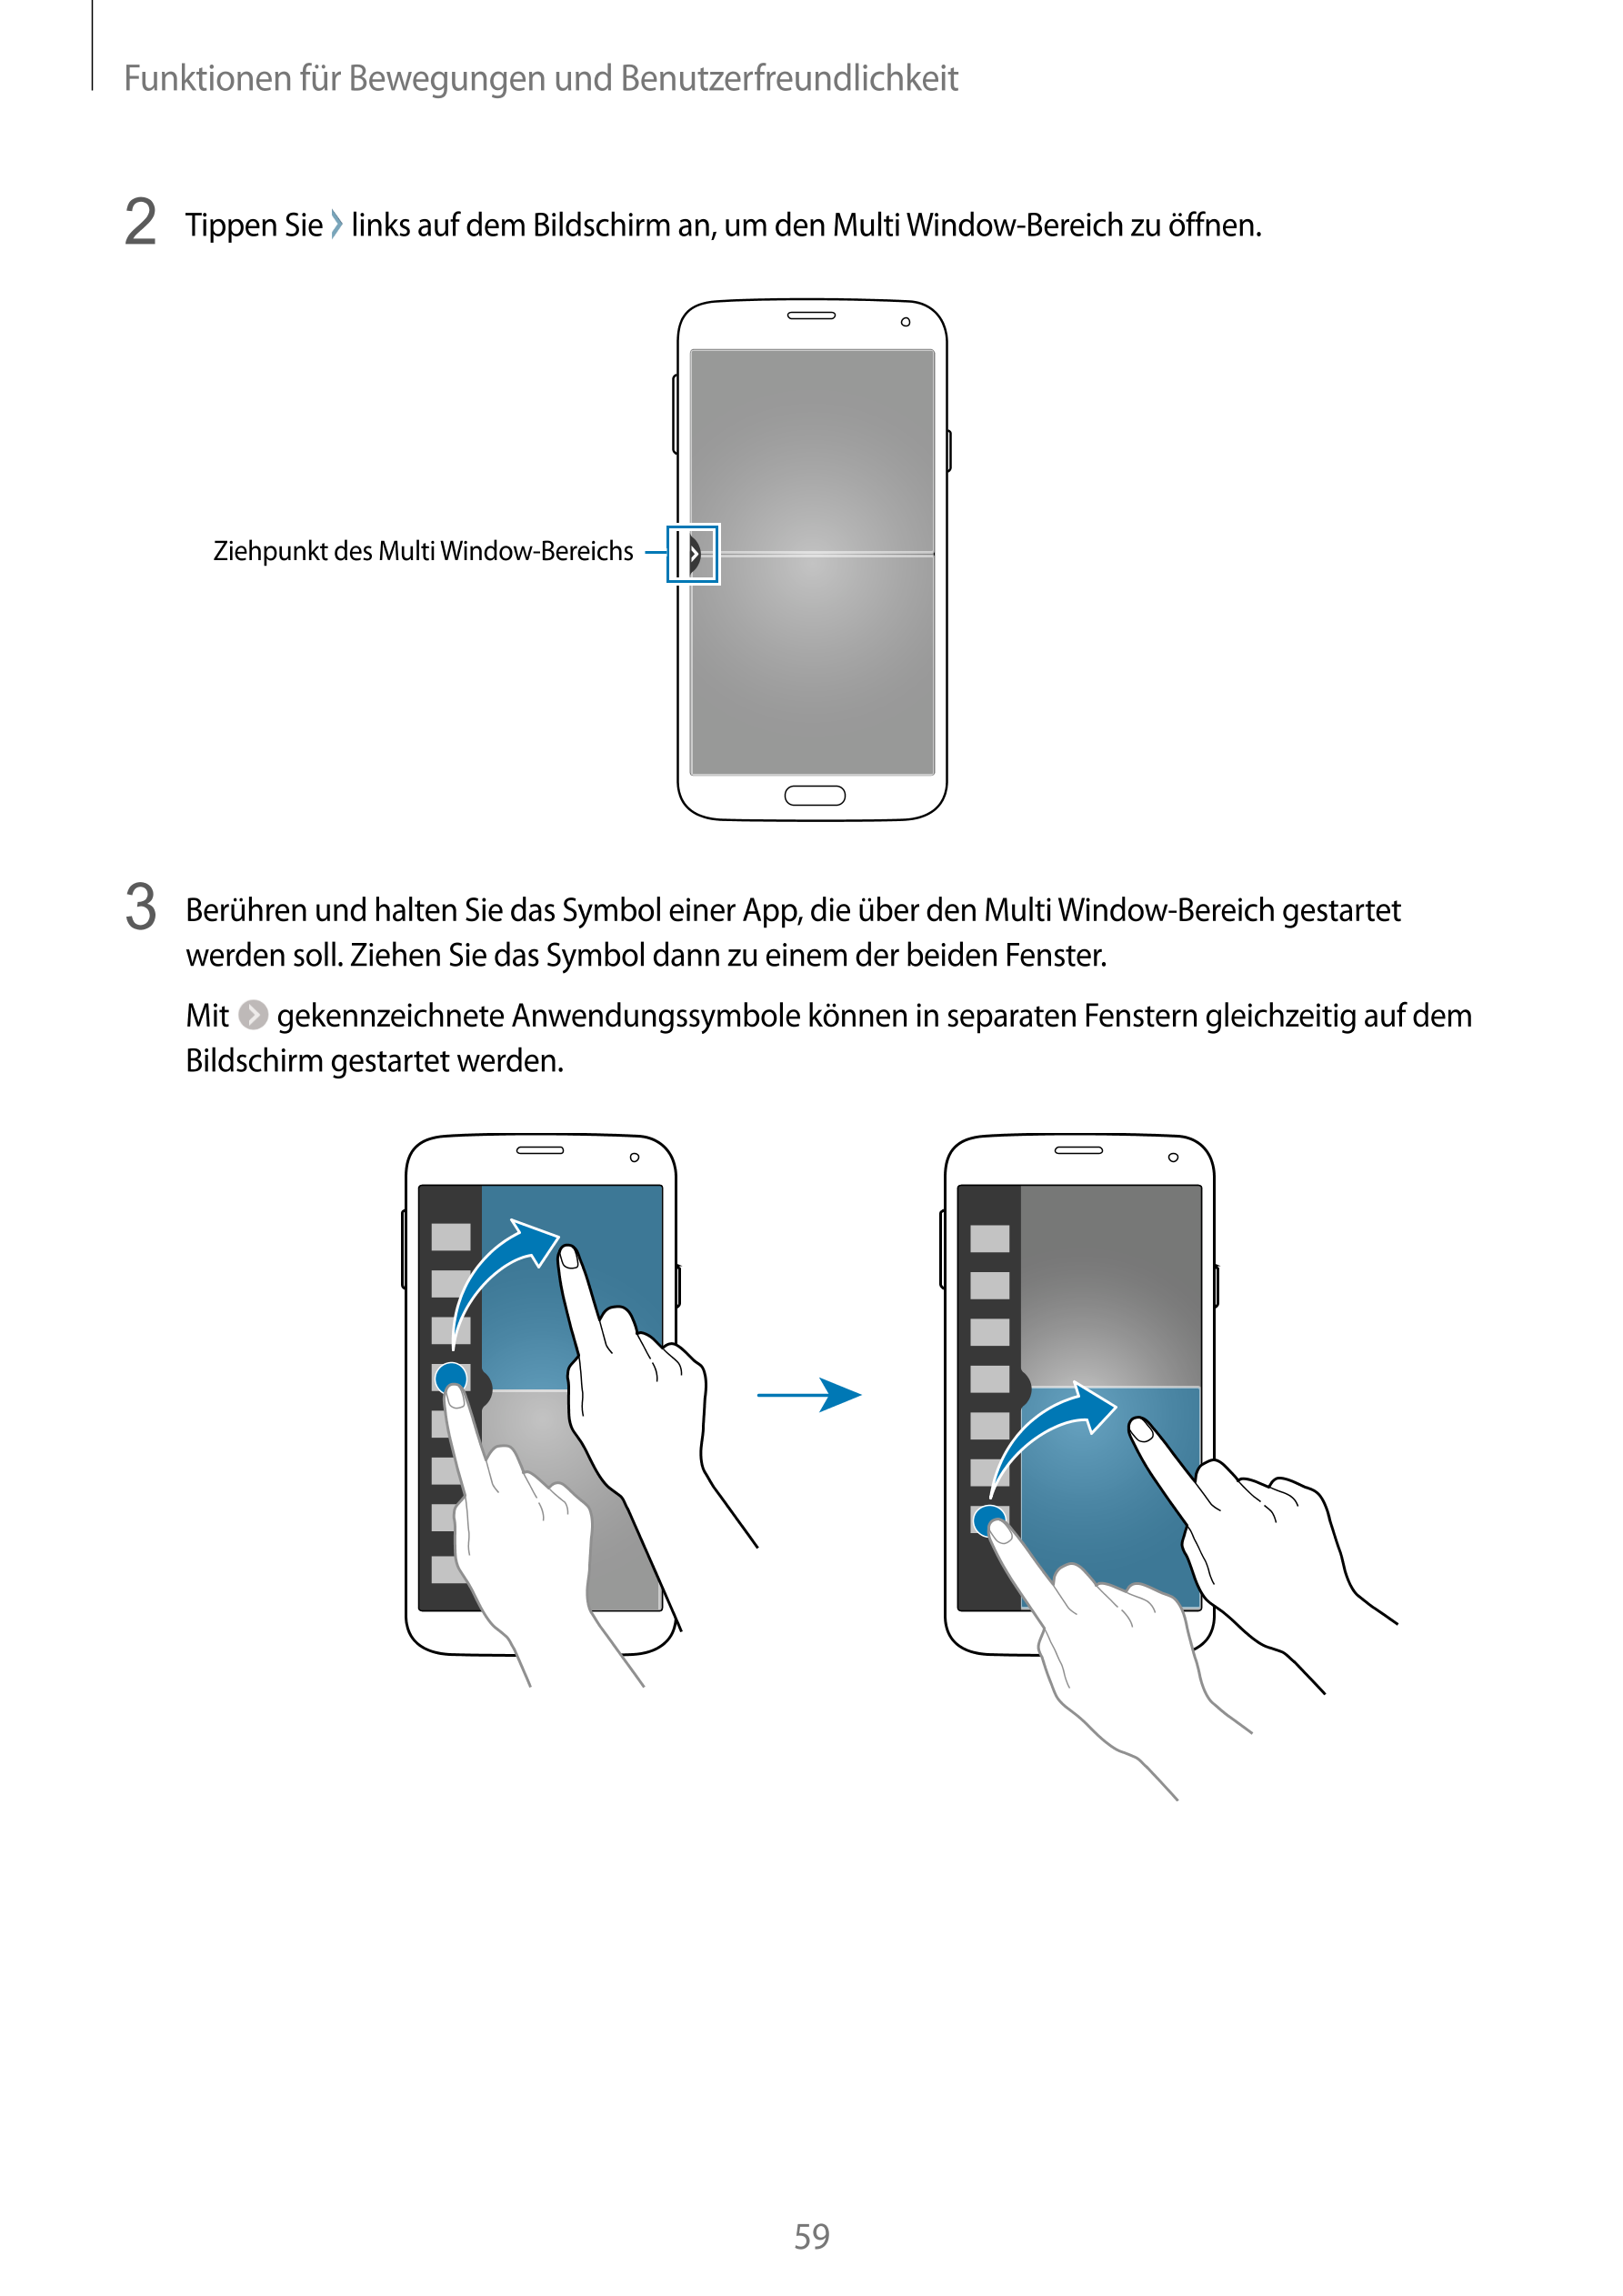 Funktionen für Bewegungen und Benutzerfreundlichkeit
2  Tippen Sie   links auf dem Bildschirm an, um den Multi Window-Bereich zu